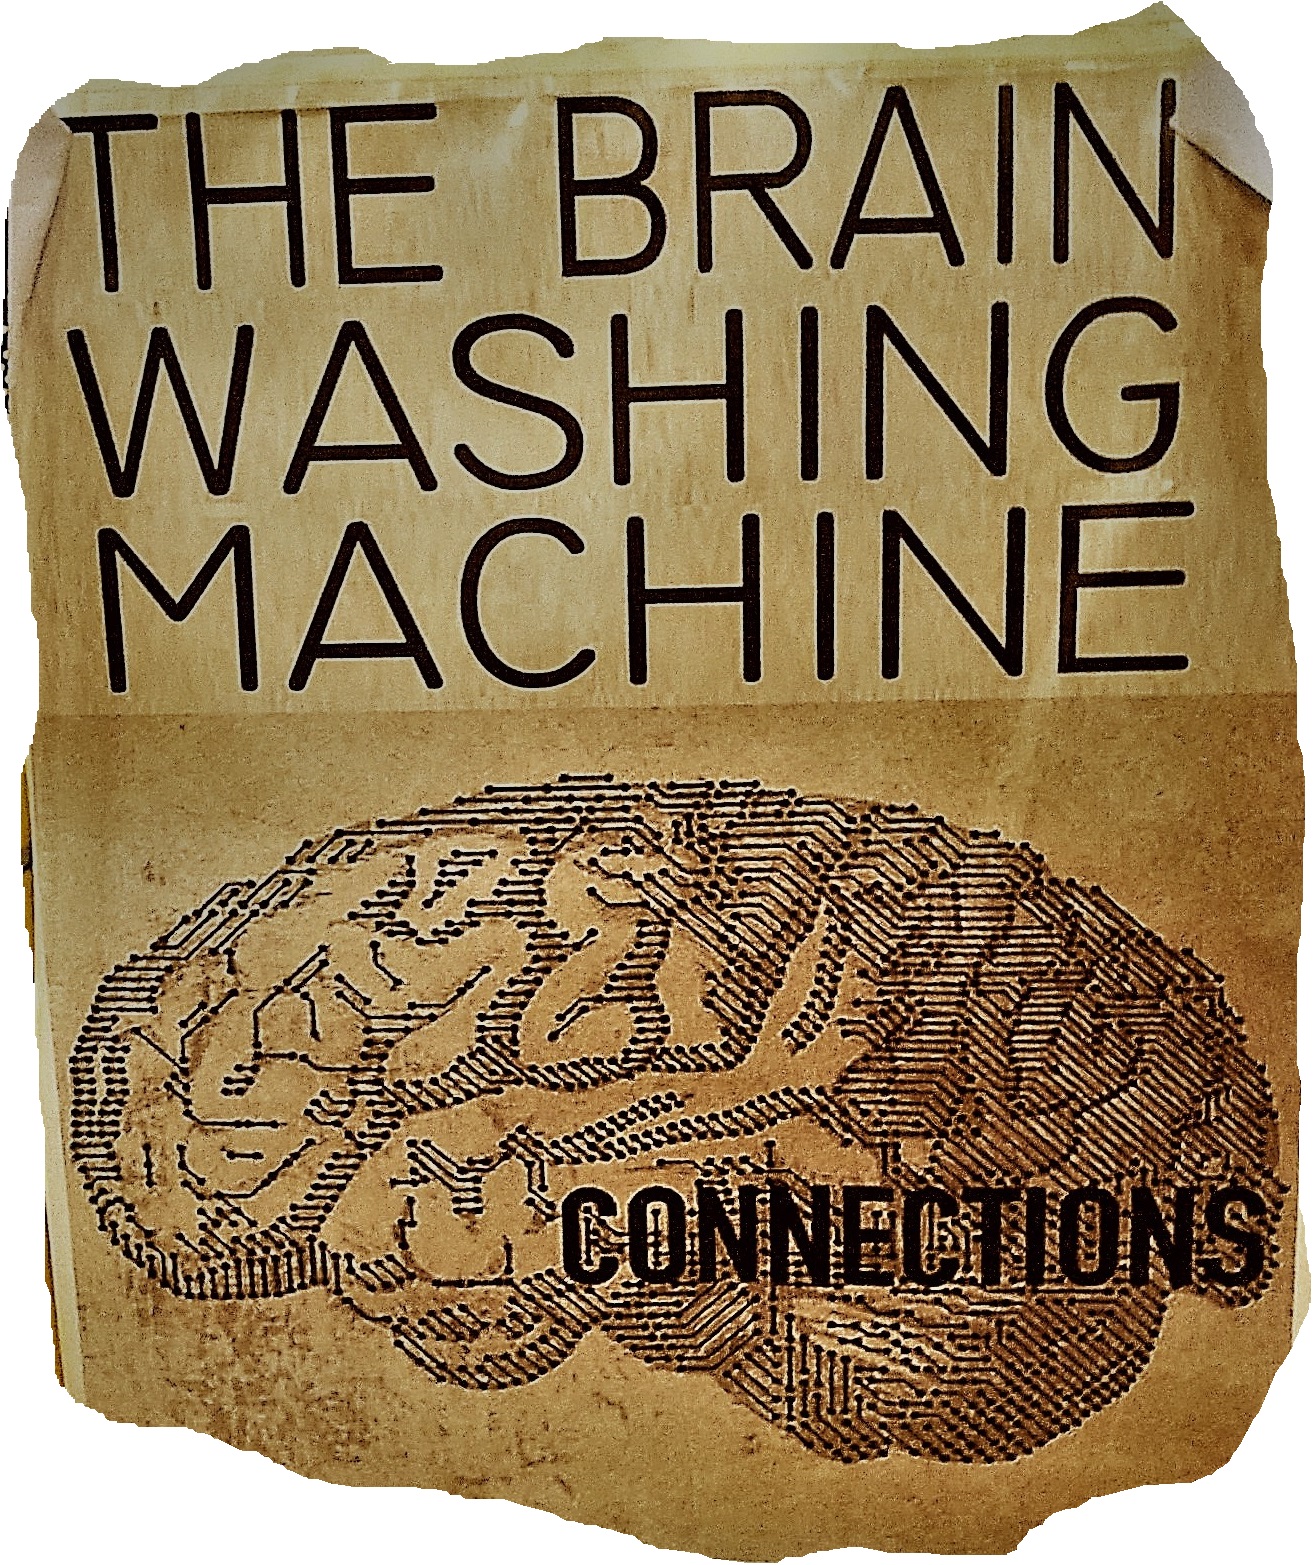 Immagine della locandina del gruppo musicale "The brain Washing Machine", per gentile concessione di Marco, cantante e Tecnico Radiologo della band (foto ScienzaVeneto)